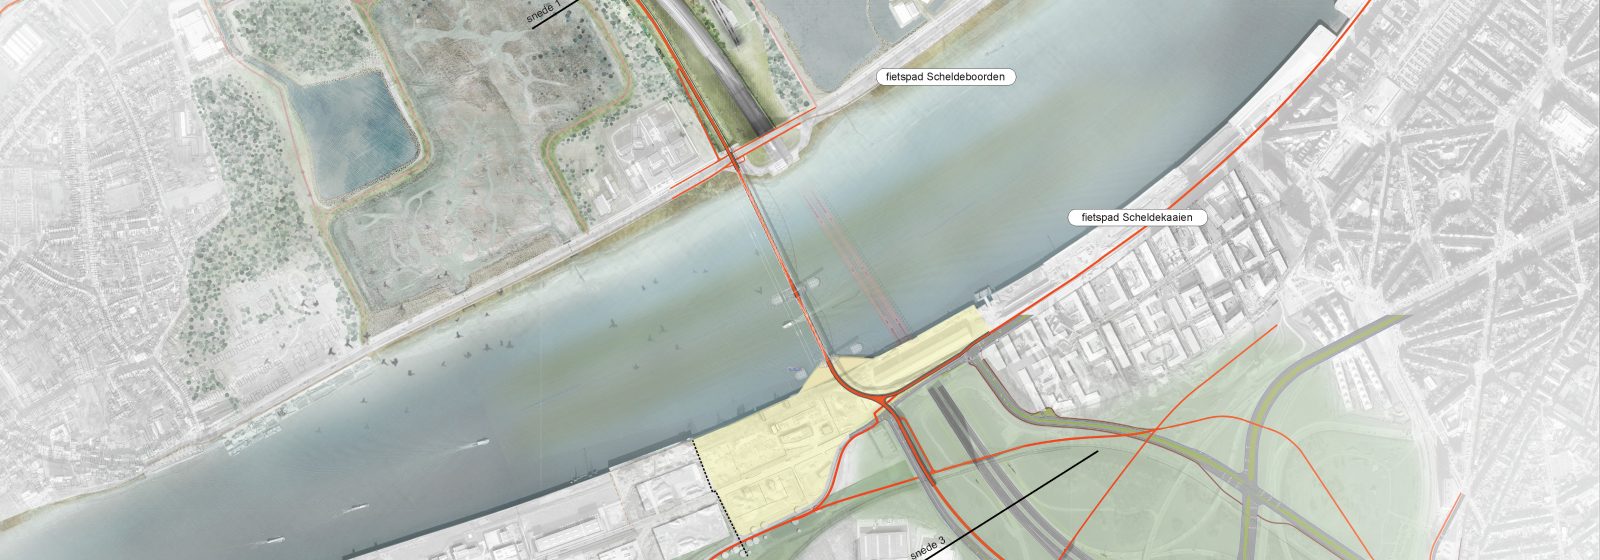 Richtinggevend ontwerp van nieuwe voetgangers- en fietsersbrug over Schelde